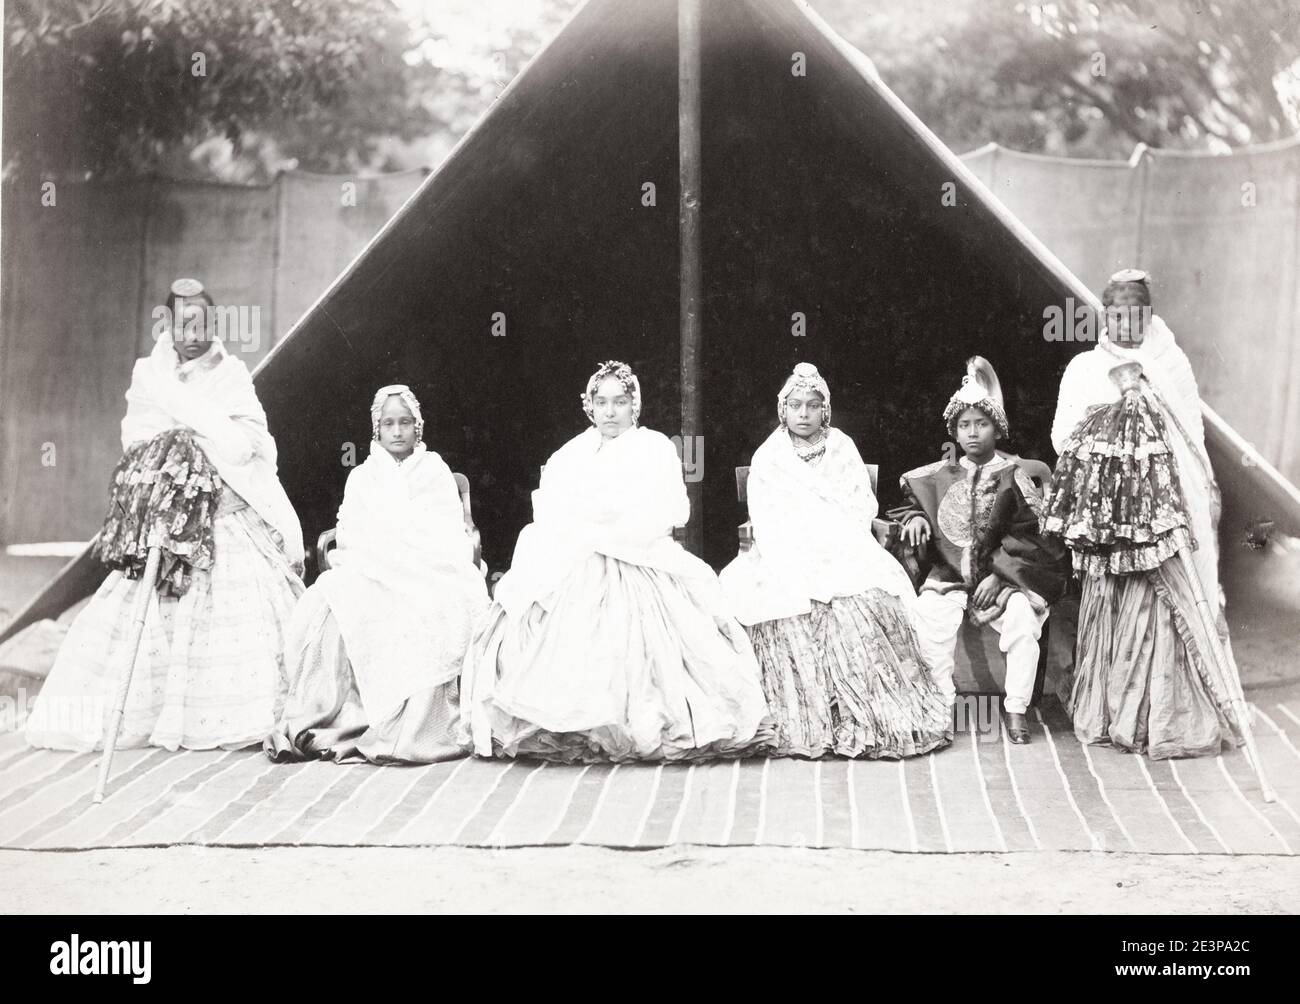 Vintage 19. Jahrhundert Foto: Gruppe von indischen Adel in feiner Kleidung Stockfoto